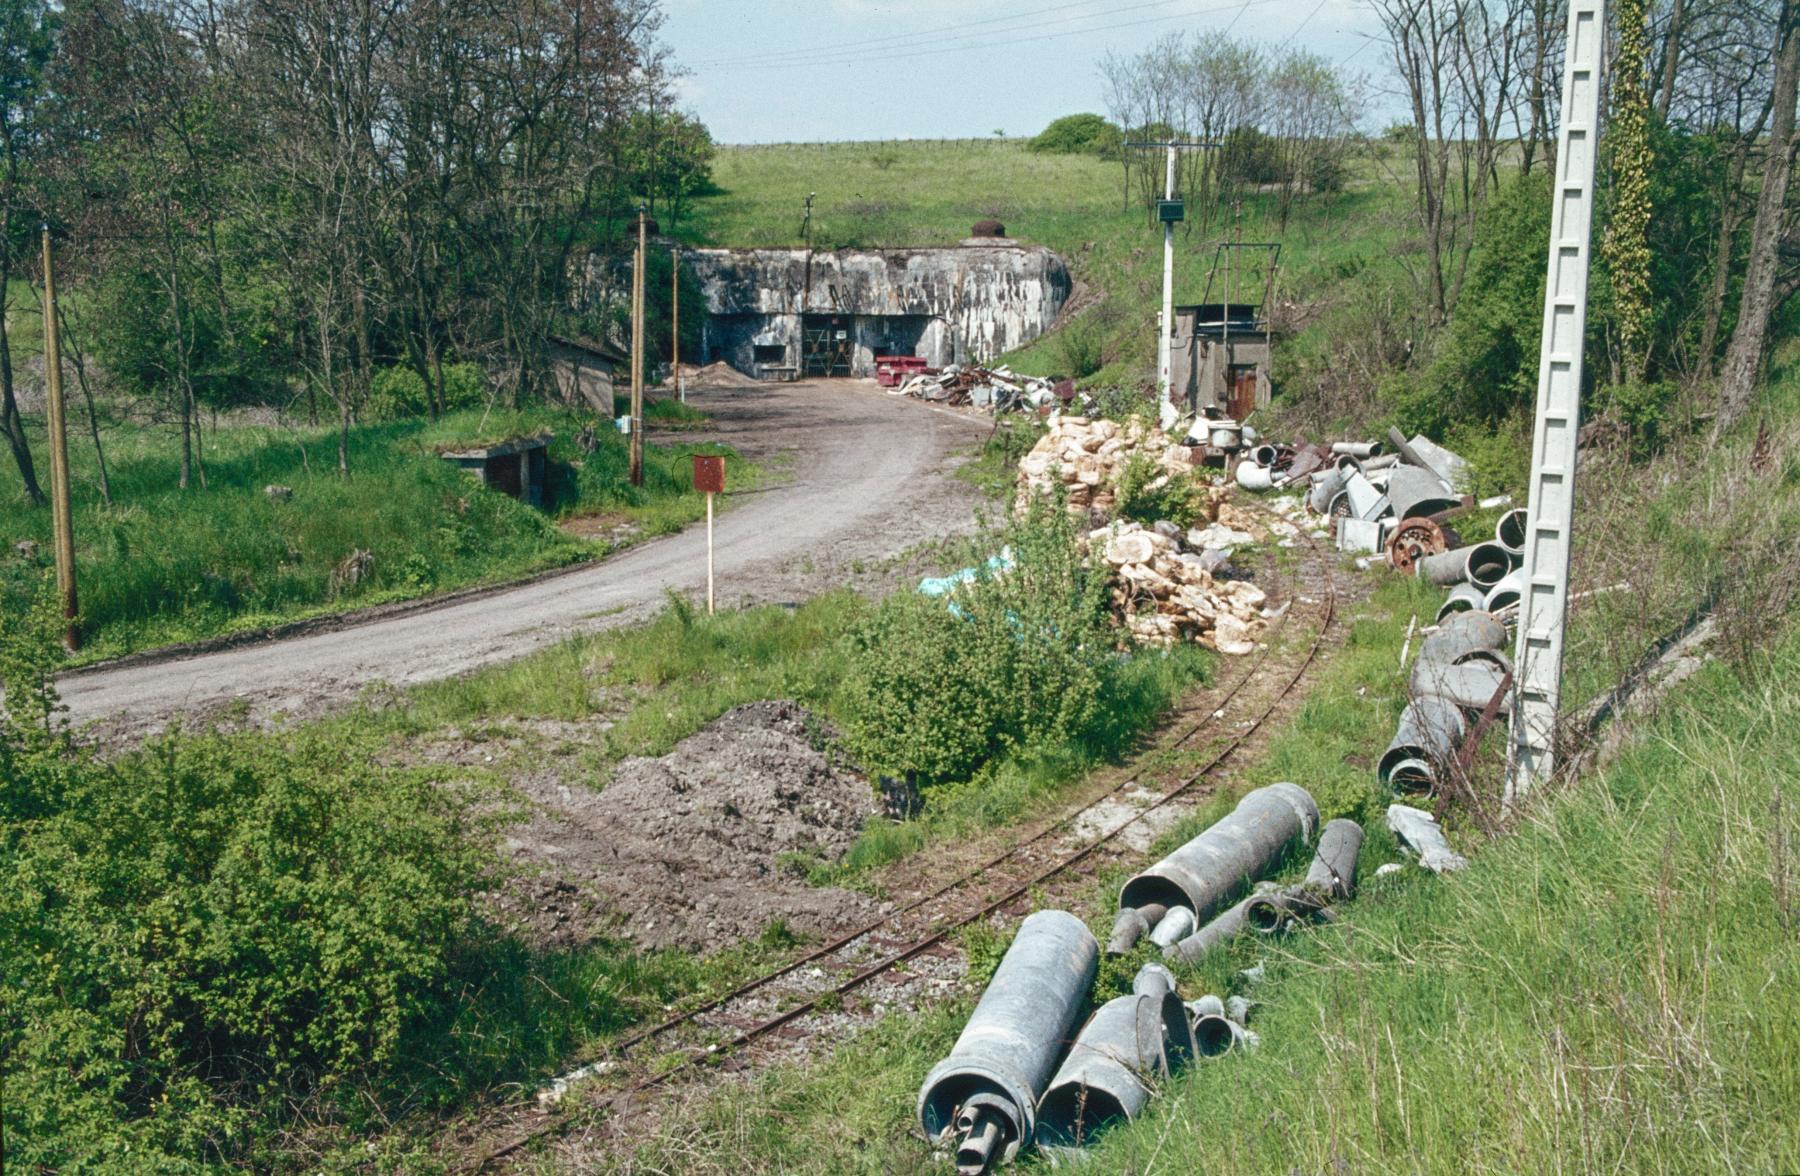 Ligne Maginot - ANZELING - A25 - (Ouvrage d'artillerie) - Entrée munitions
Le terrain devant l'entrée